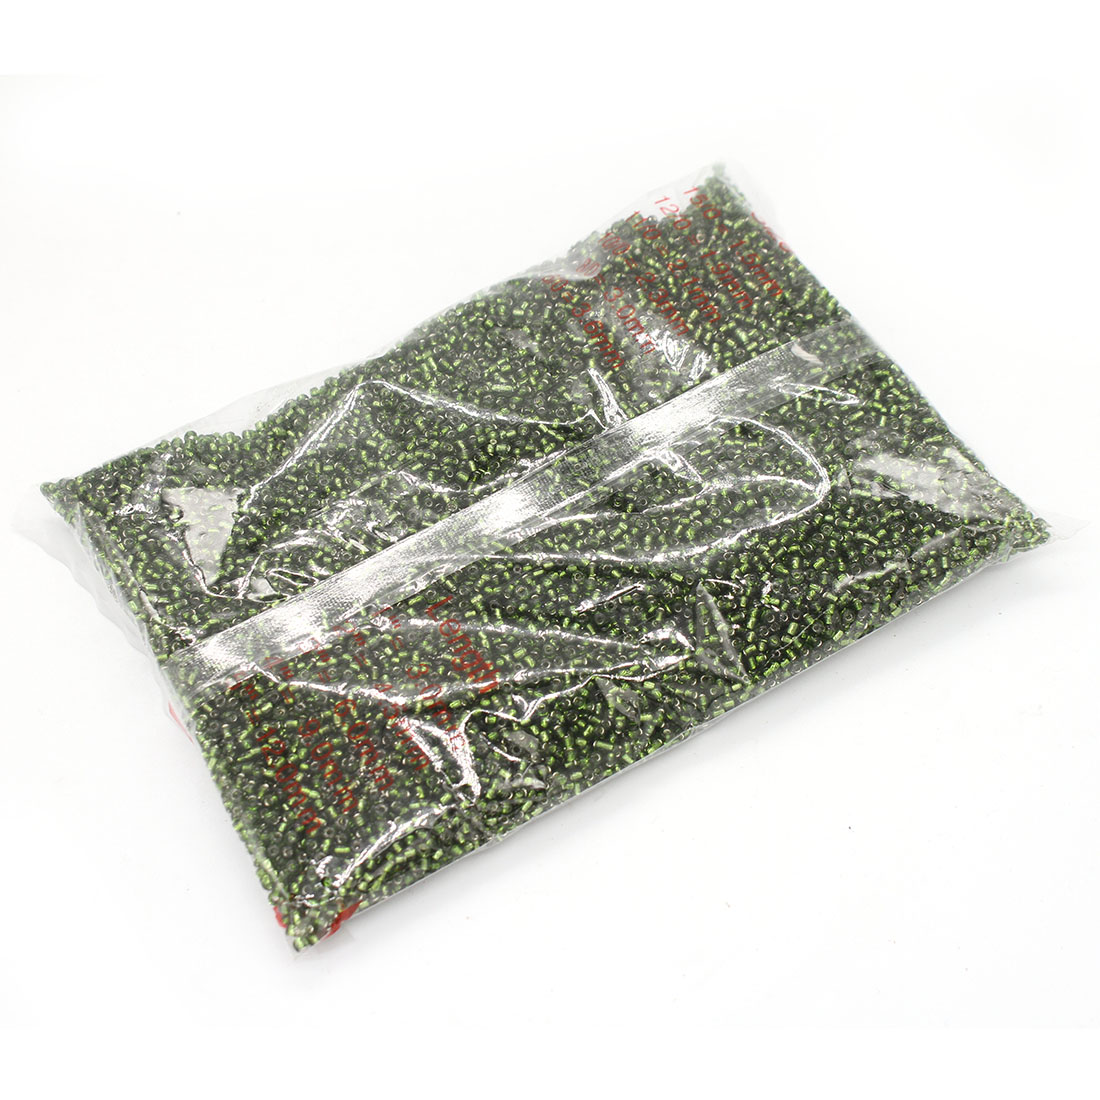 Green grass 4MM4500 packs